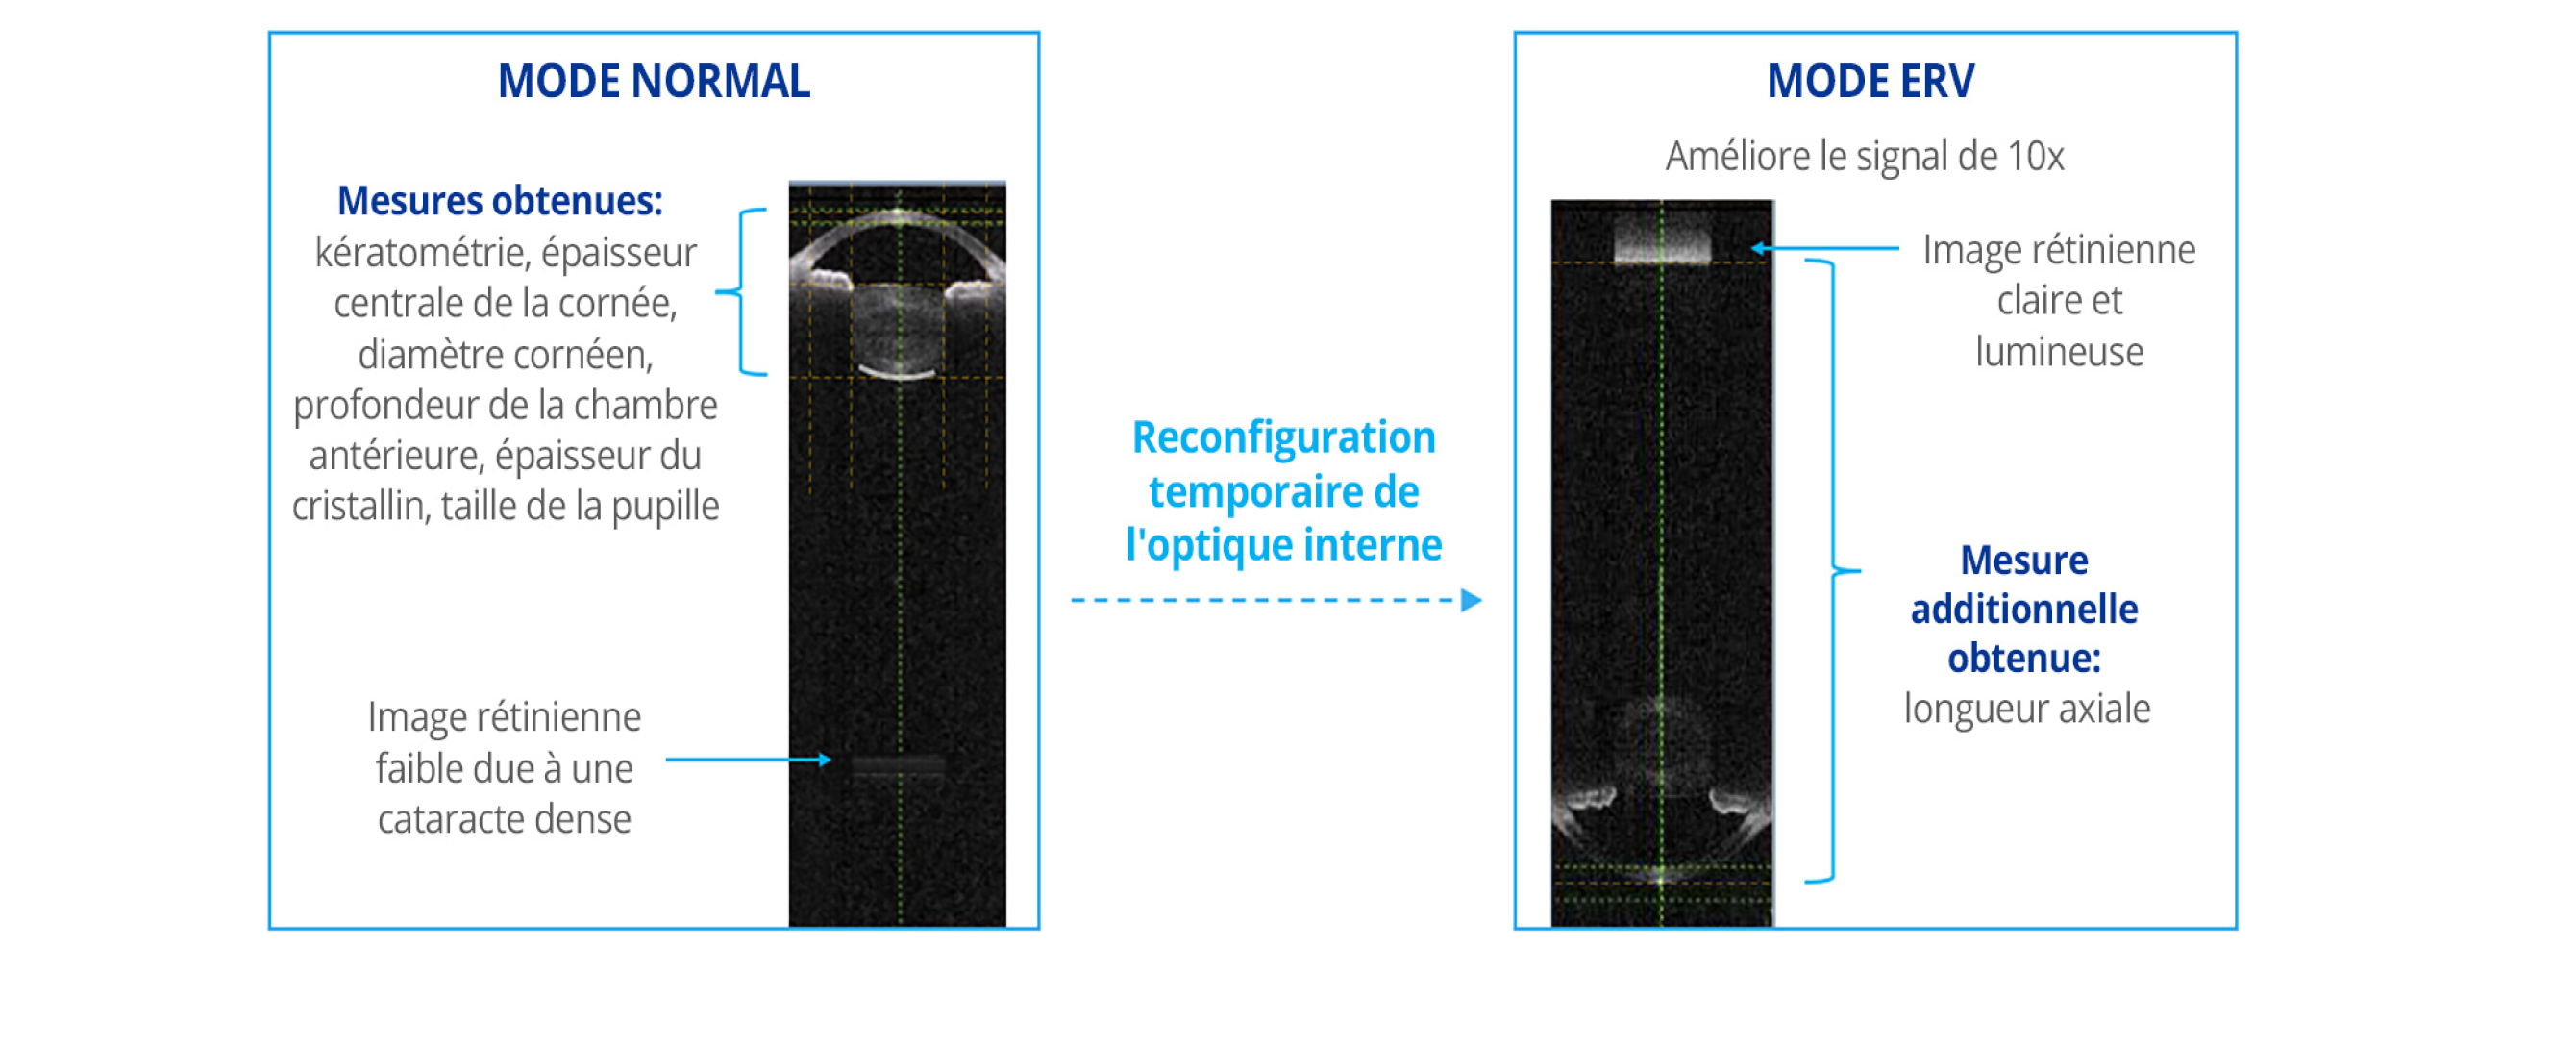 Comparaison des images biométriques capturées par le biomètre ARGOS en mode normal et en mode de visualisation améliorée de la rétine (ERV). Le mode ERV reconfigure l'optique interne pour améliorer le signal au niveau de la rétine de 10 fois par rapport au mode normal.